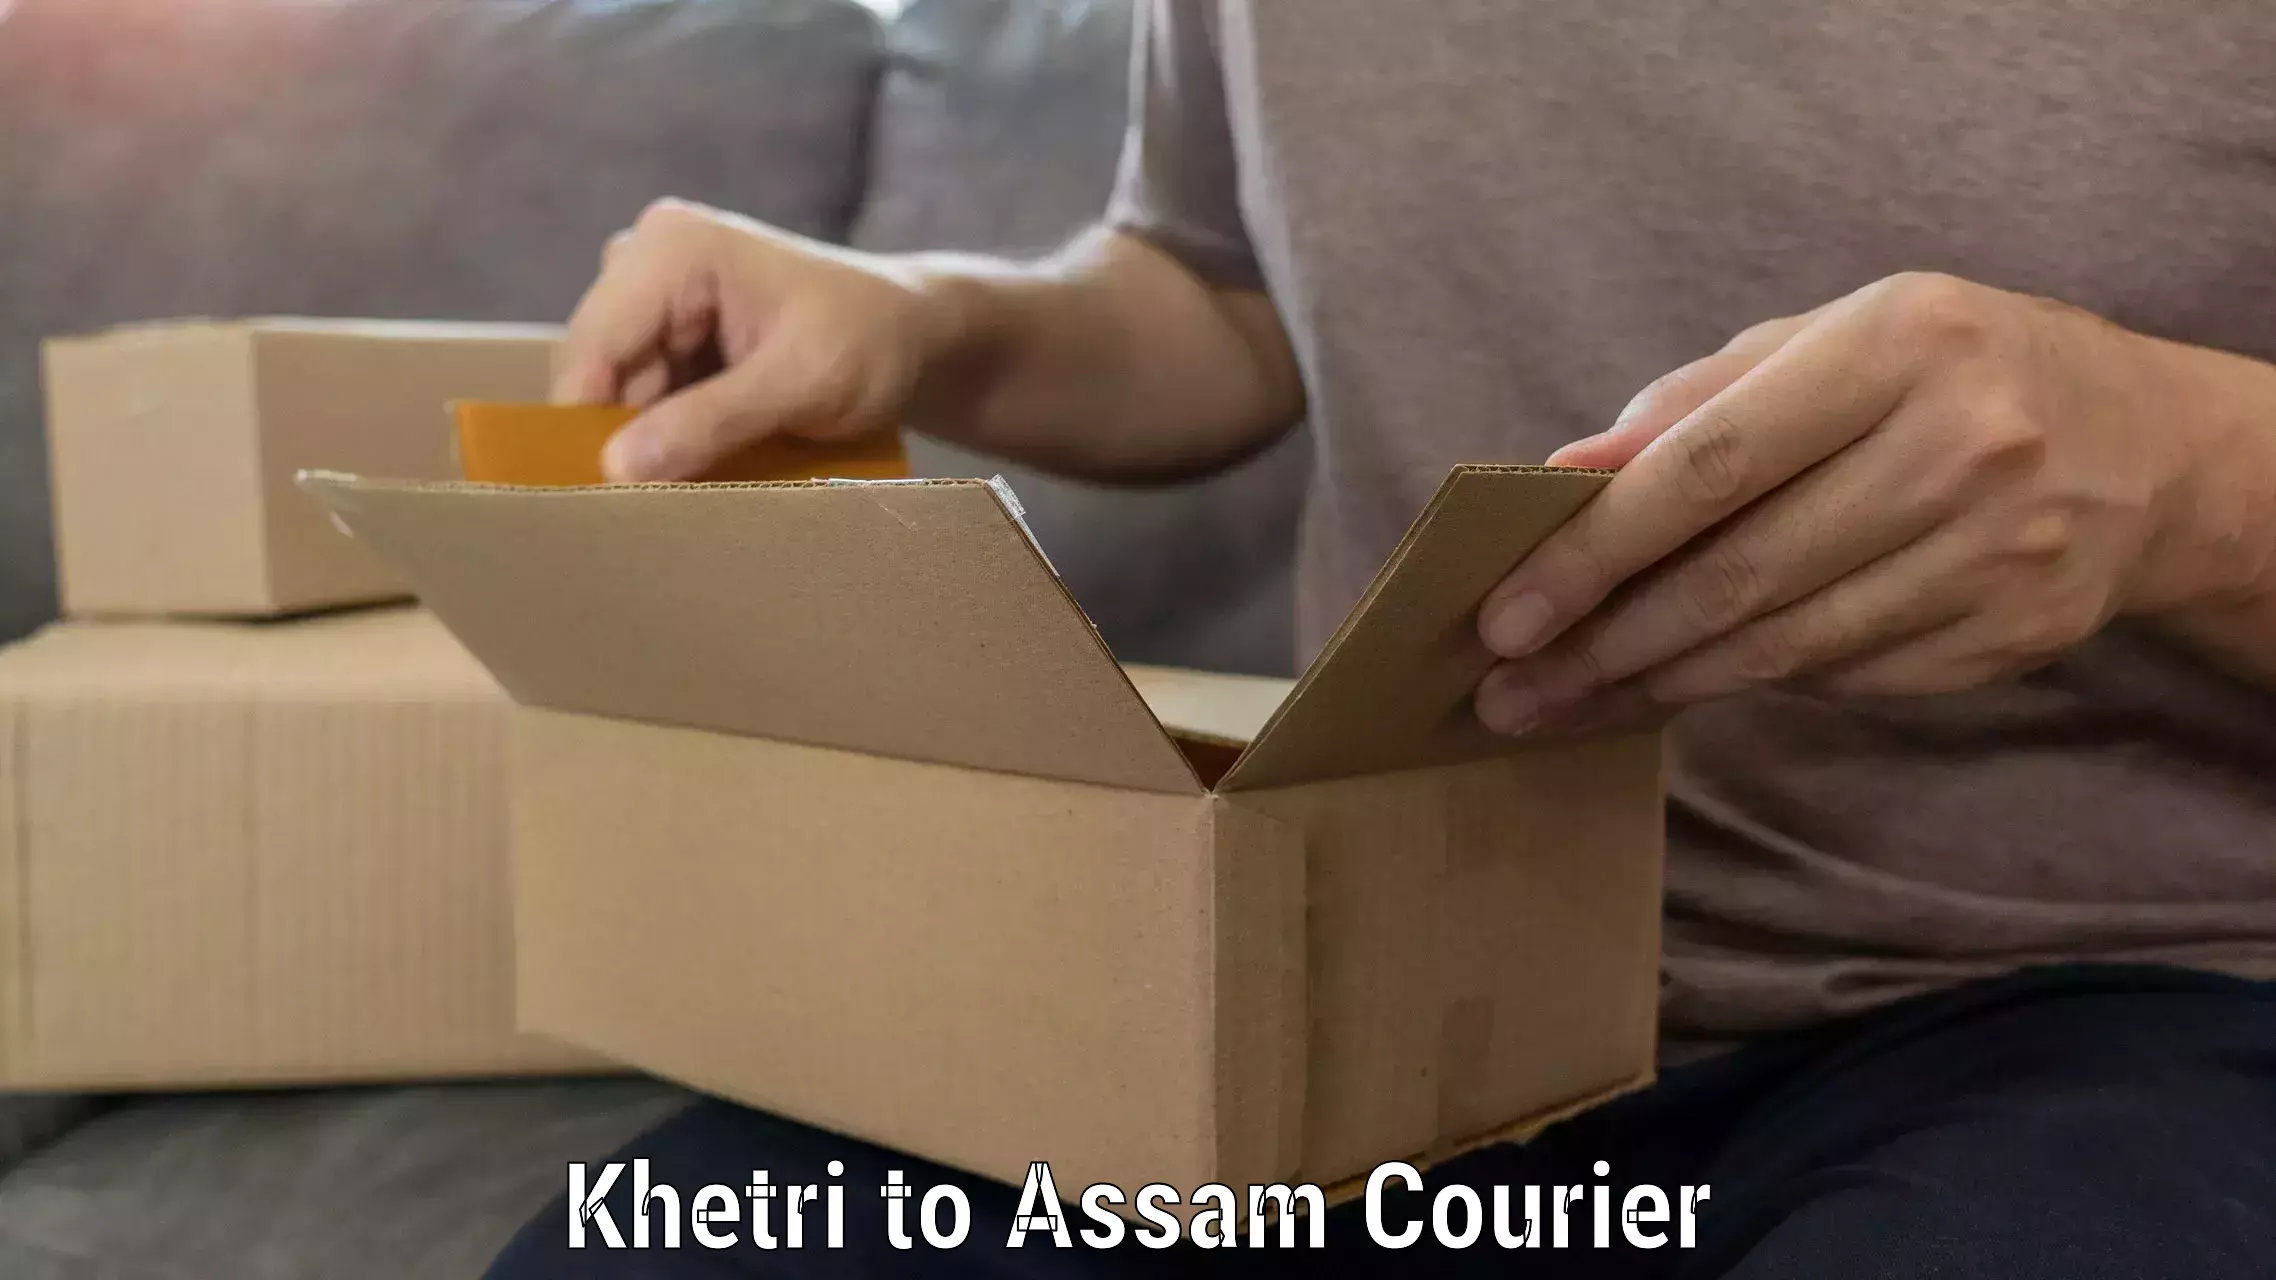 Easy furniture transport Khetri to Assam